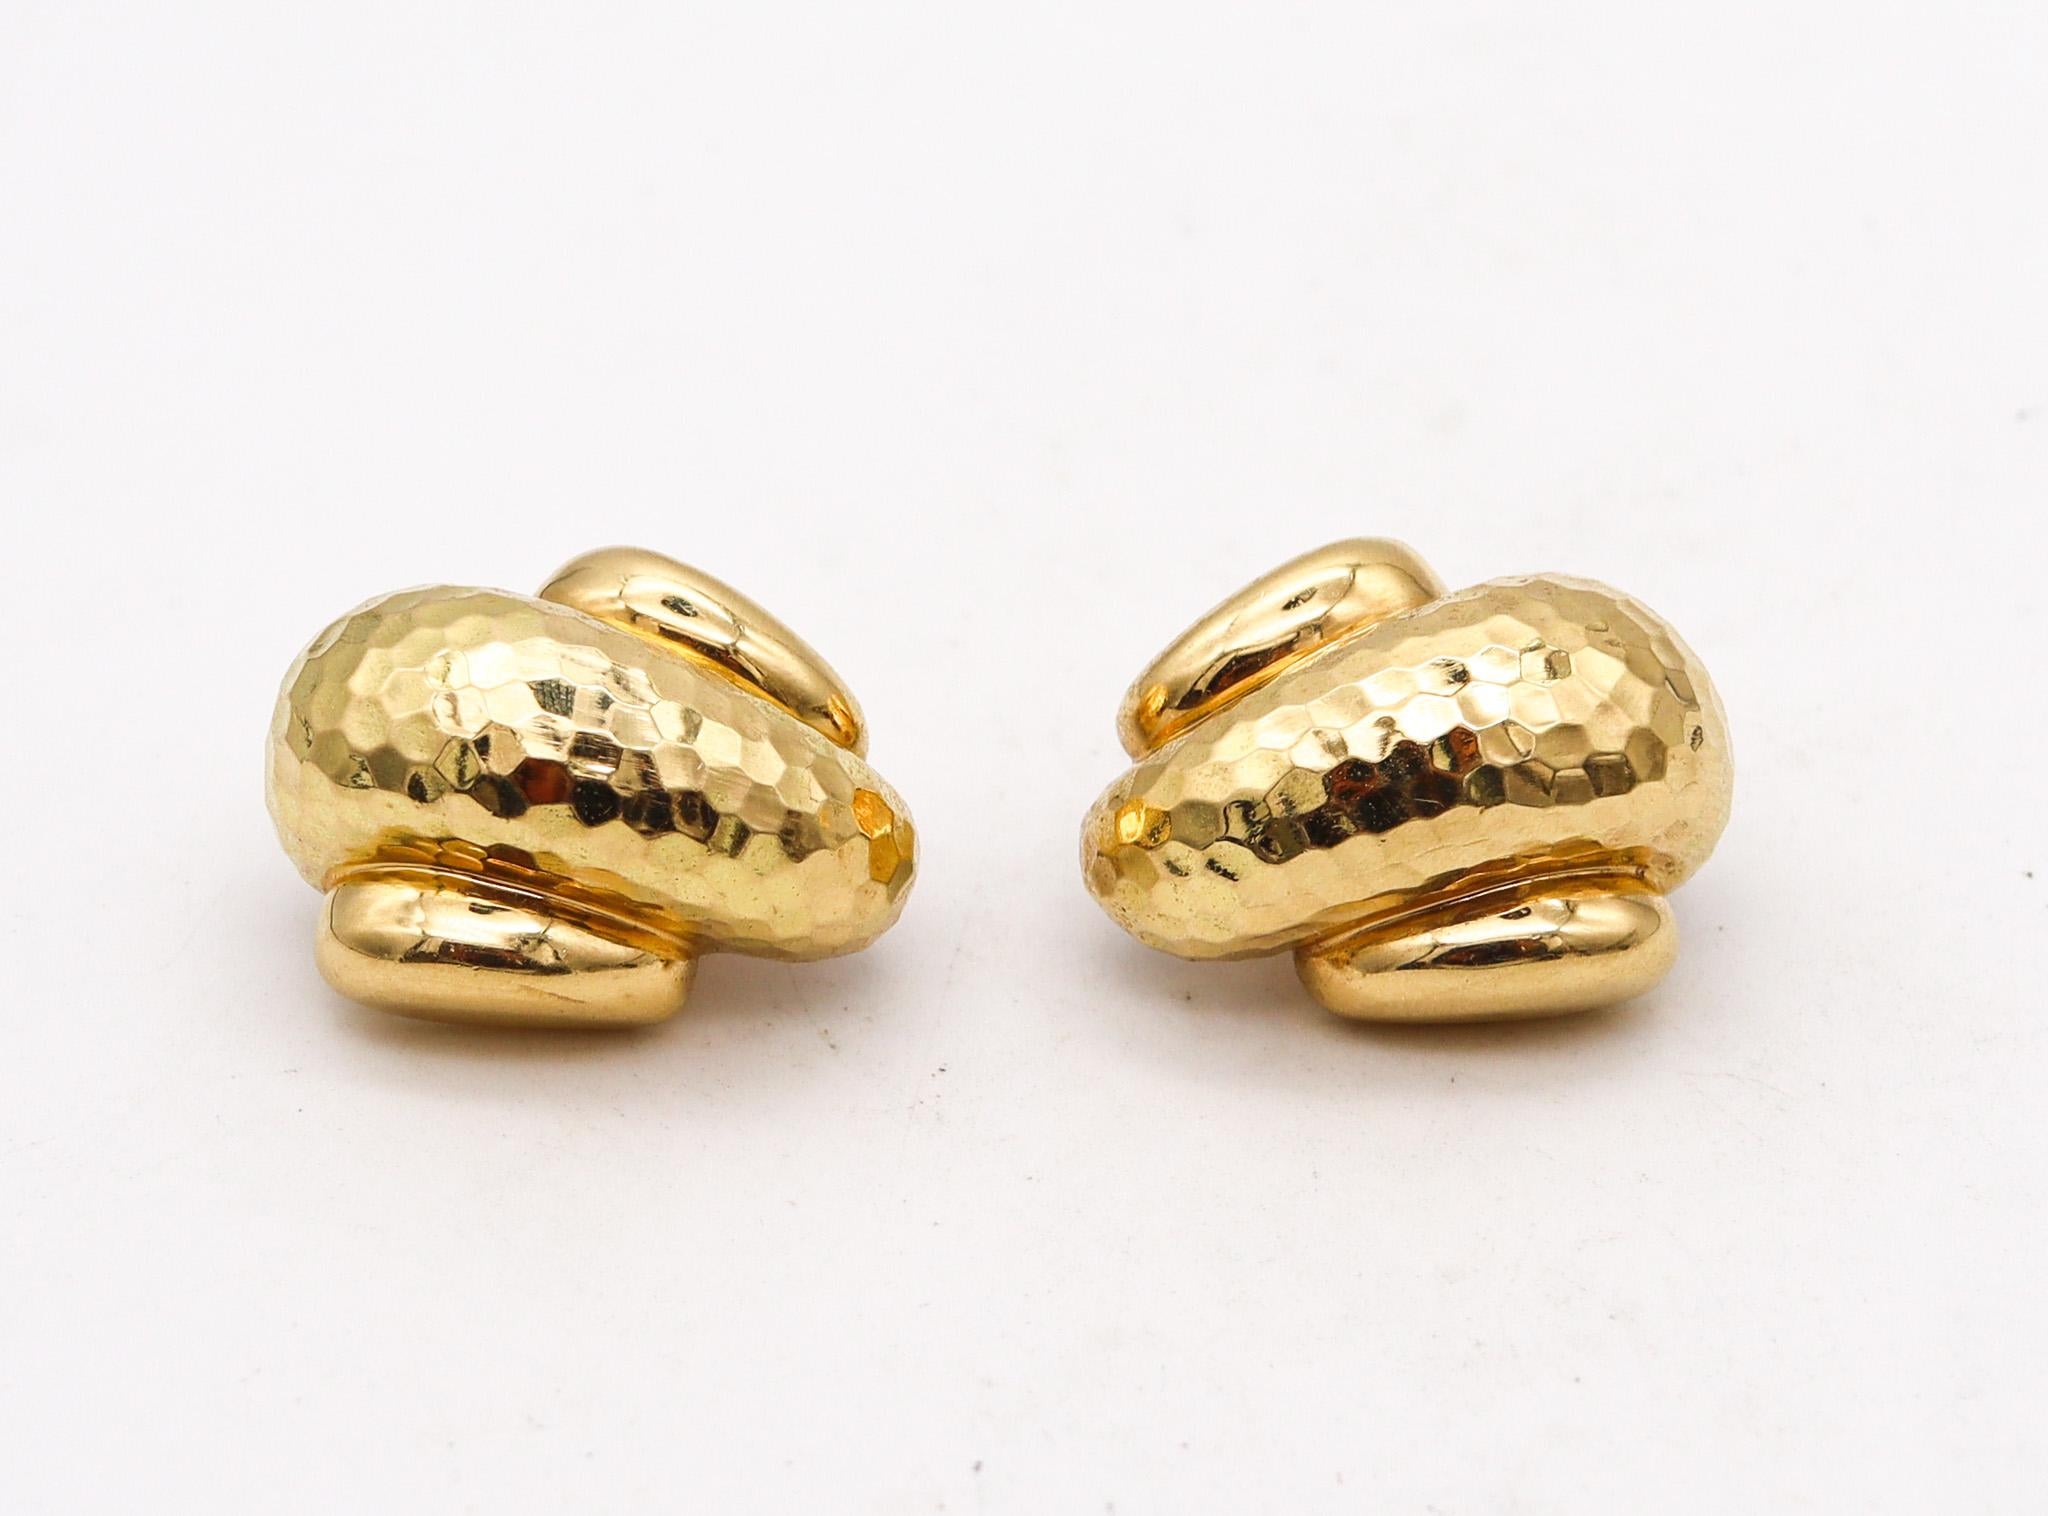 Boucles d'oreilles à pince conçues par Andrew Clunn.

Cette paire de boucles d'oreilles a été créée à New York dans l'atelier de joaillerie d'Andrew &New. Ces boucles d'oreilles ont été fabriquées avec des motifs martelés en or jaune riche et massif